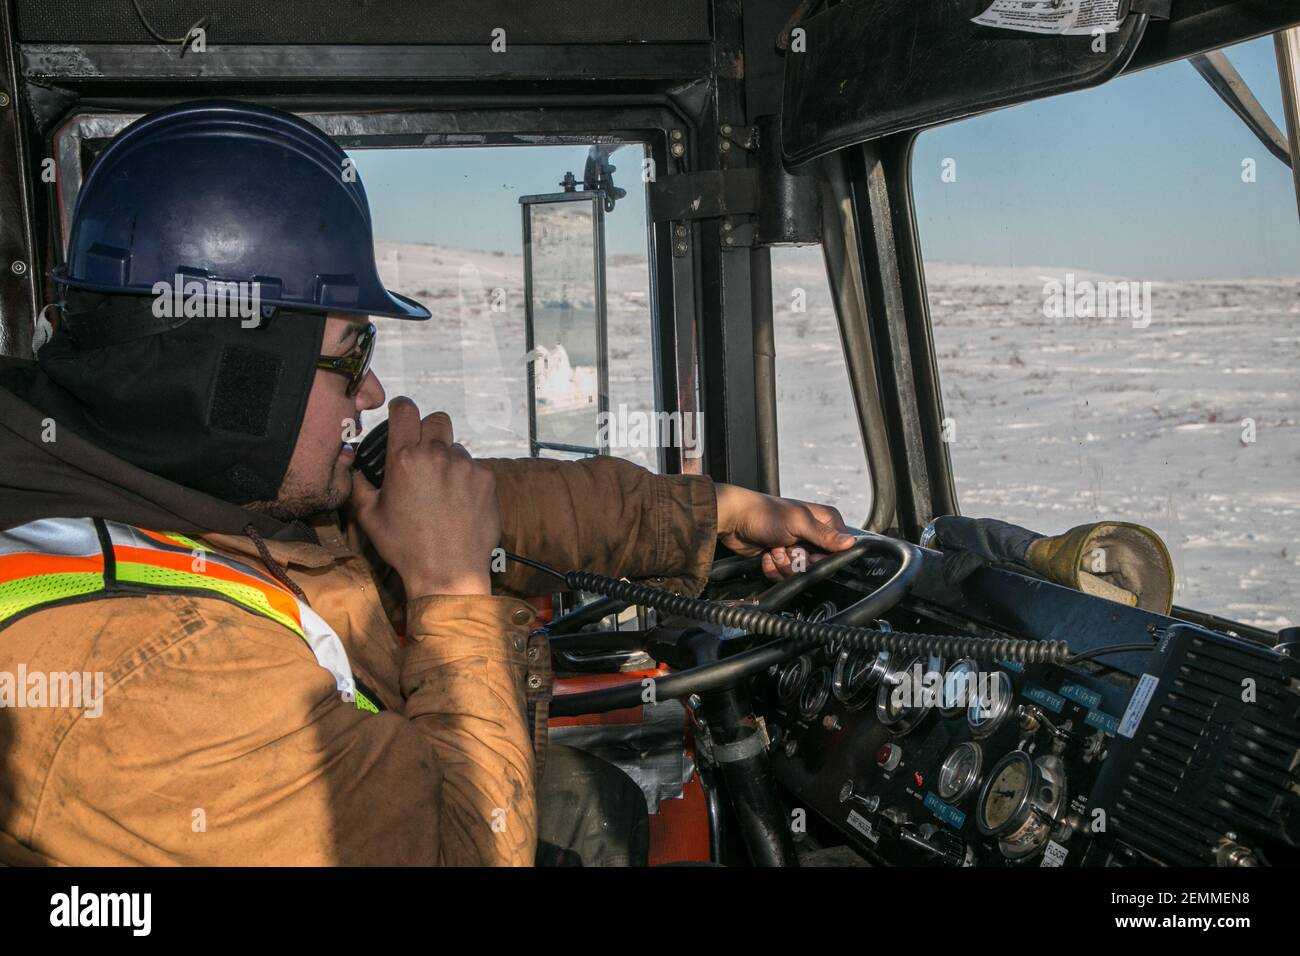 Chauffeur de camion autochtone travaillant pendant la construction hivernale de la route Inuvik-Tuktoyaktuk, dans les Territoires du Nord-Ouest, dans l'ouest de l'Arctique canadien. Banque D'Images